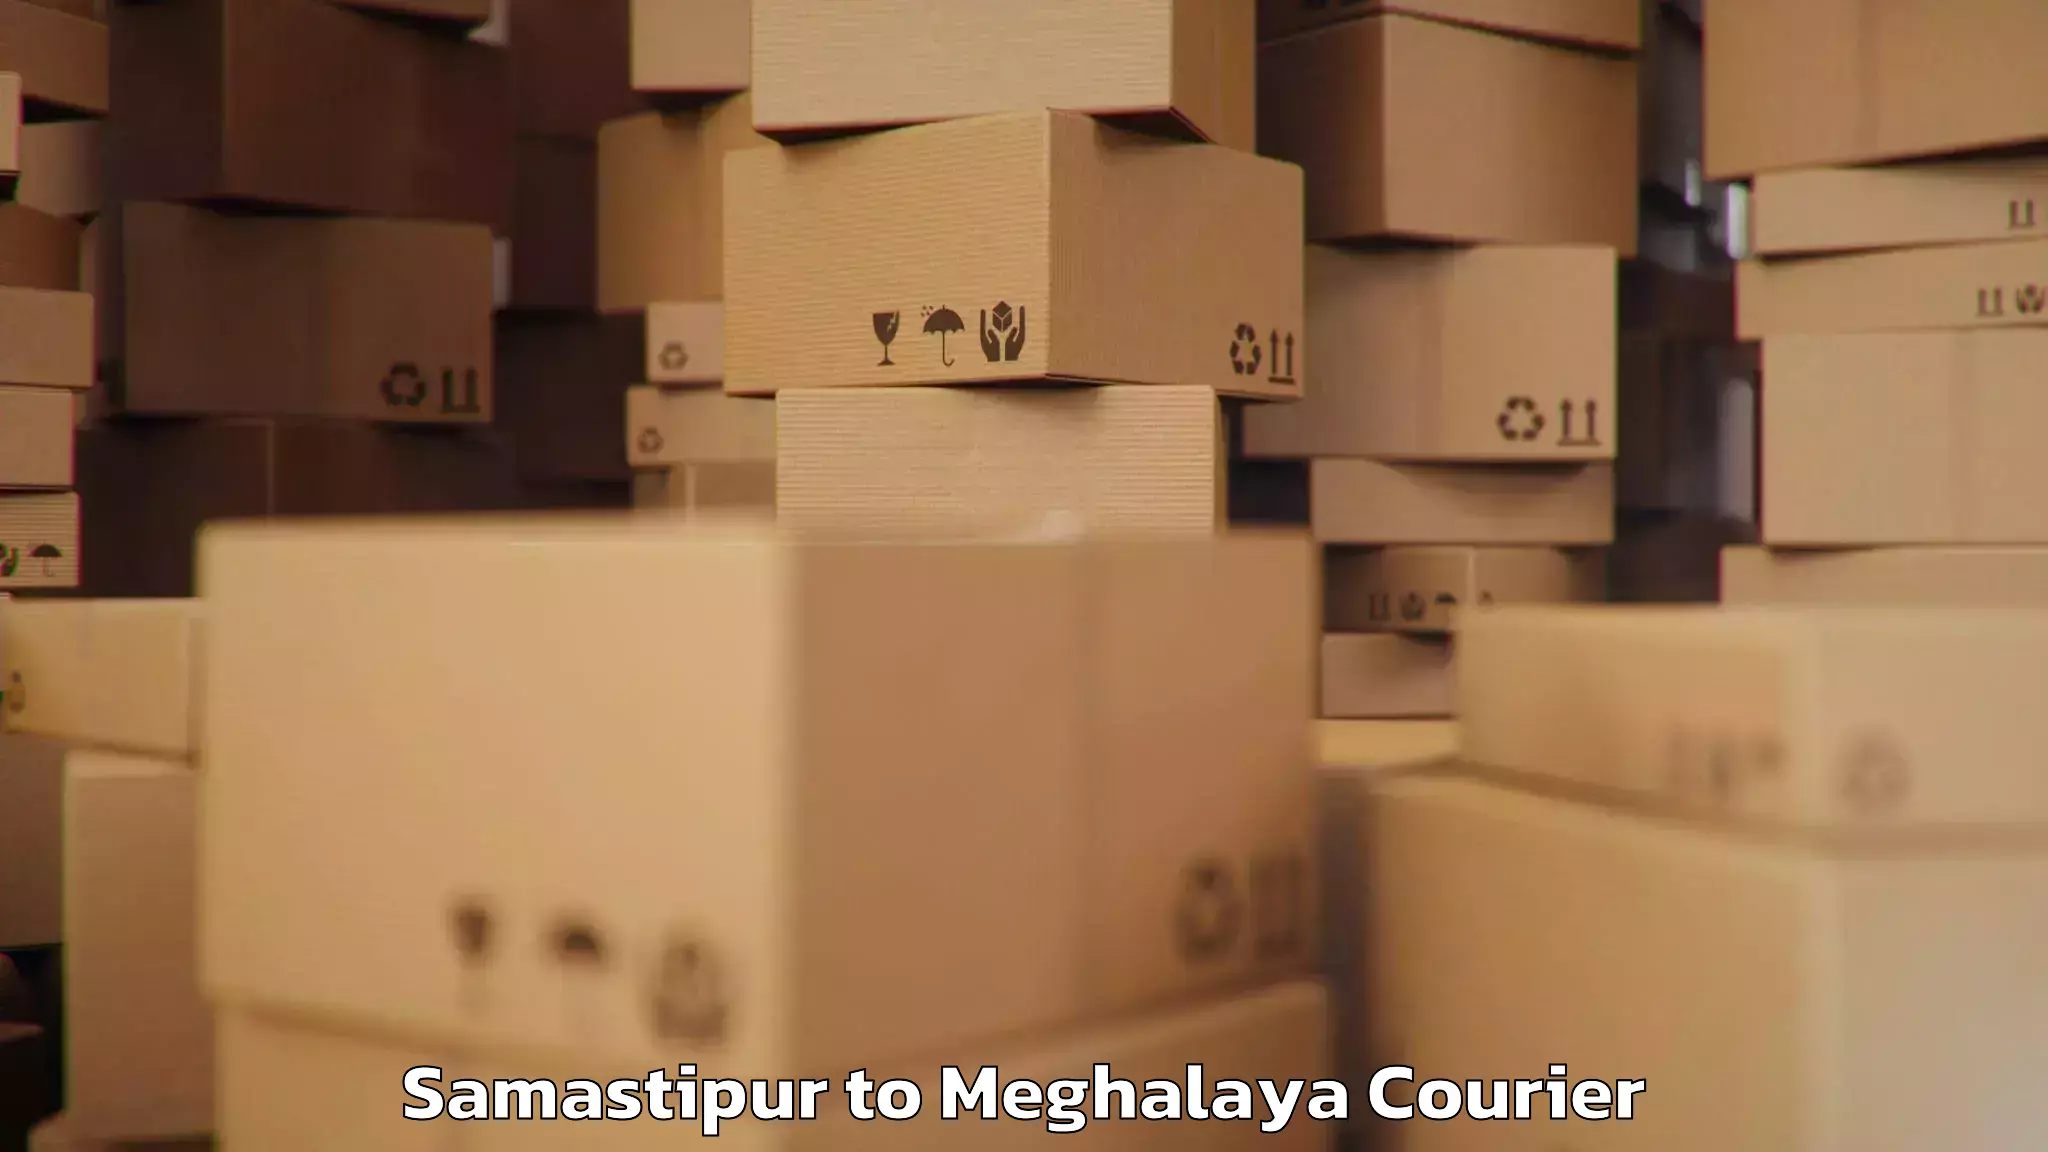 Baggage transport quote Samastipur to Meghalaya